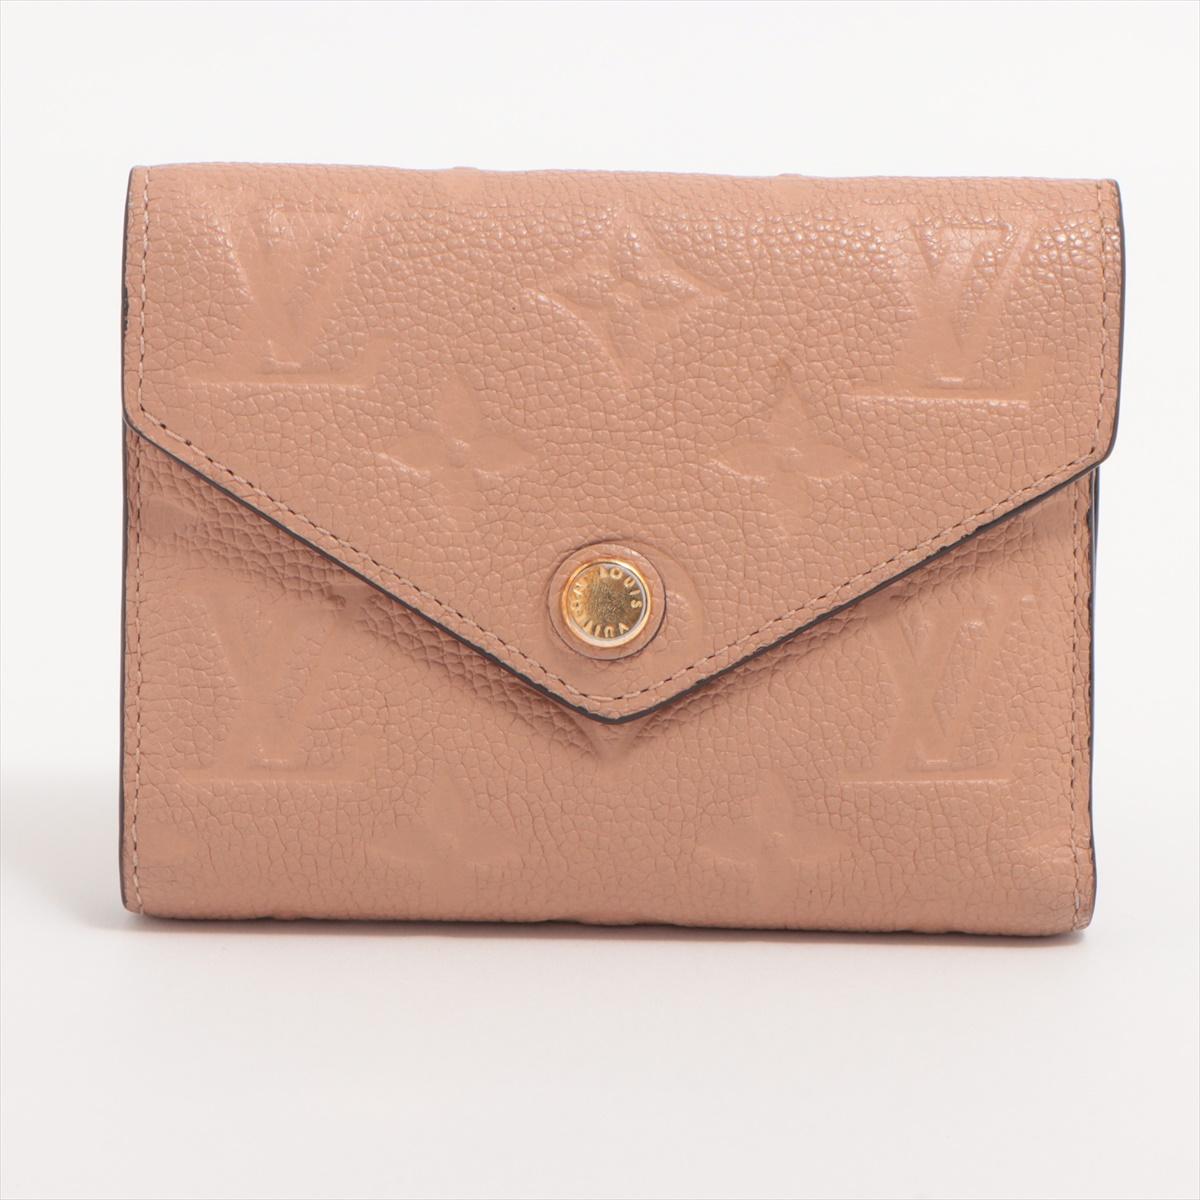 Le portefeuille Monogram Empreinte Zoé de Louis Vuitton en rose beige est un accessoire luxueux et élégant qui allie parfaitement un design moderne au motif emblématique Monogram Empreinte. Le portefeuille présente un somptueux cuir beige rosé